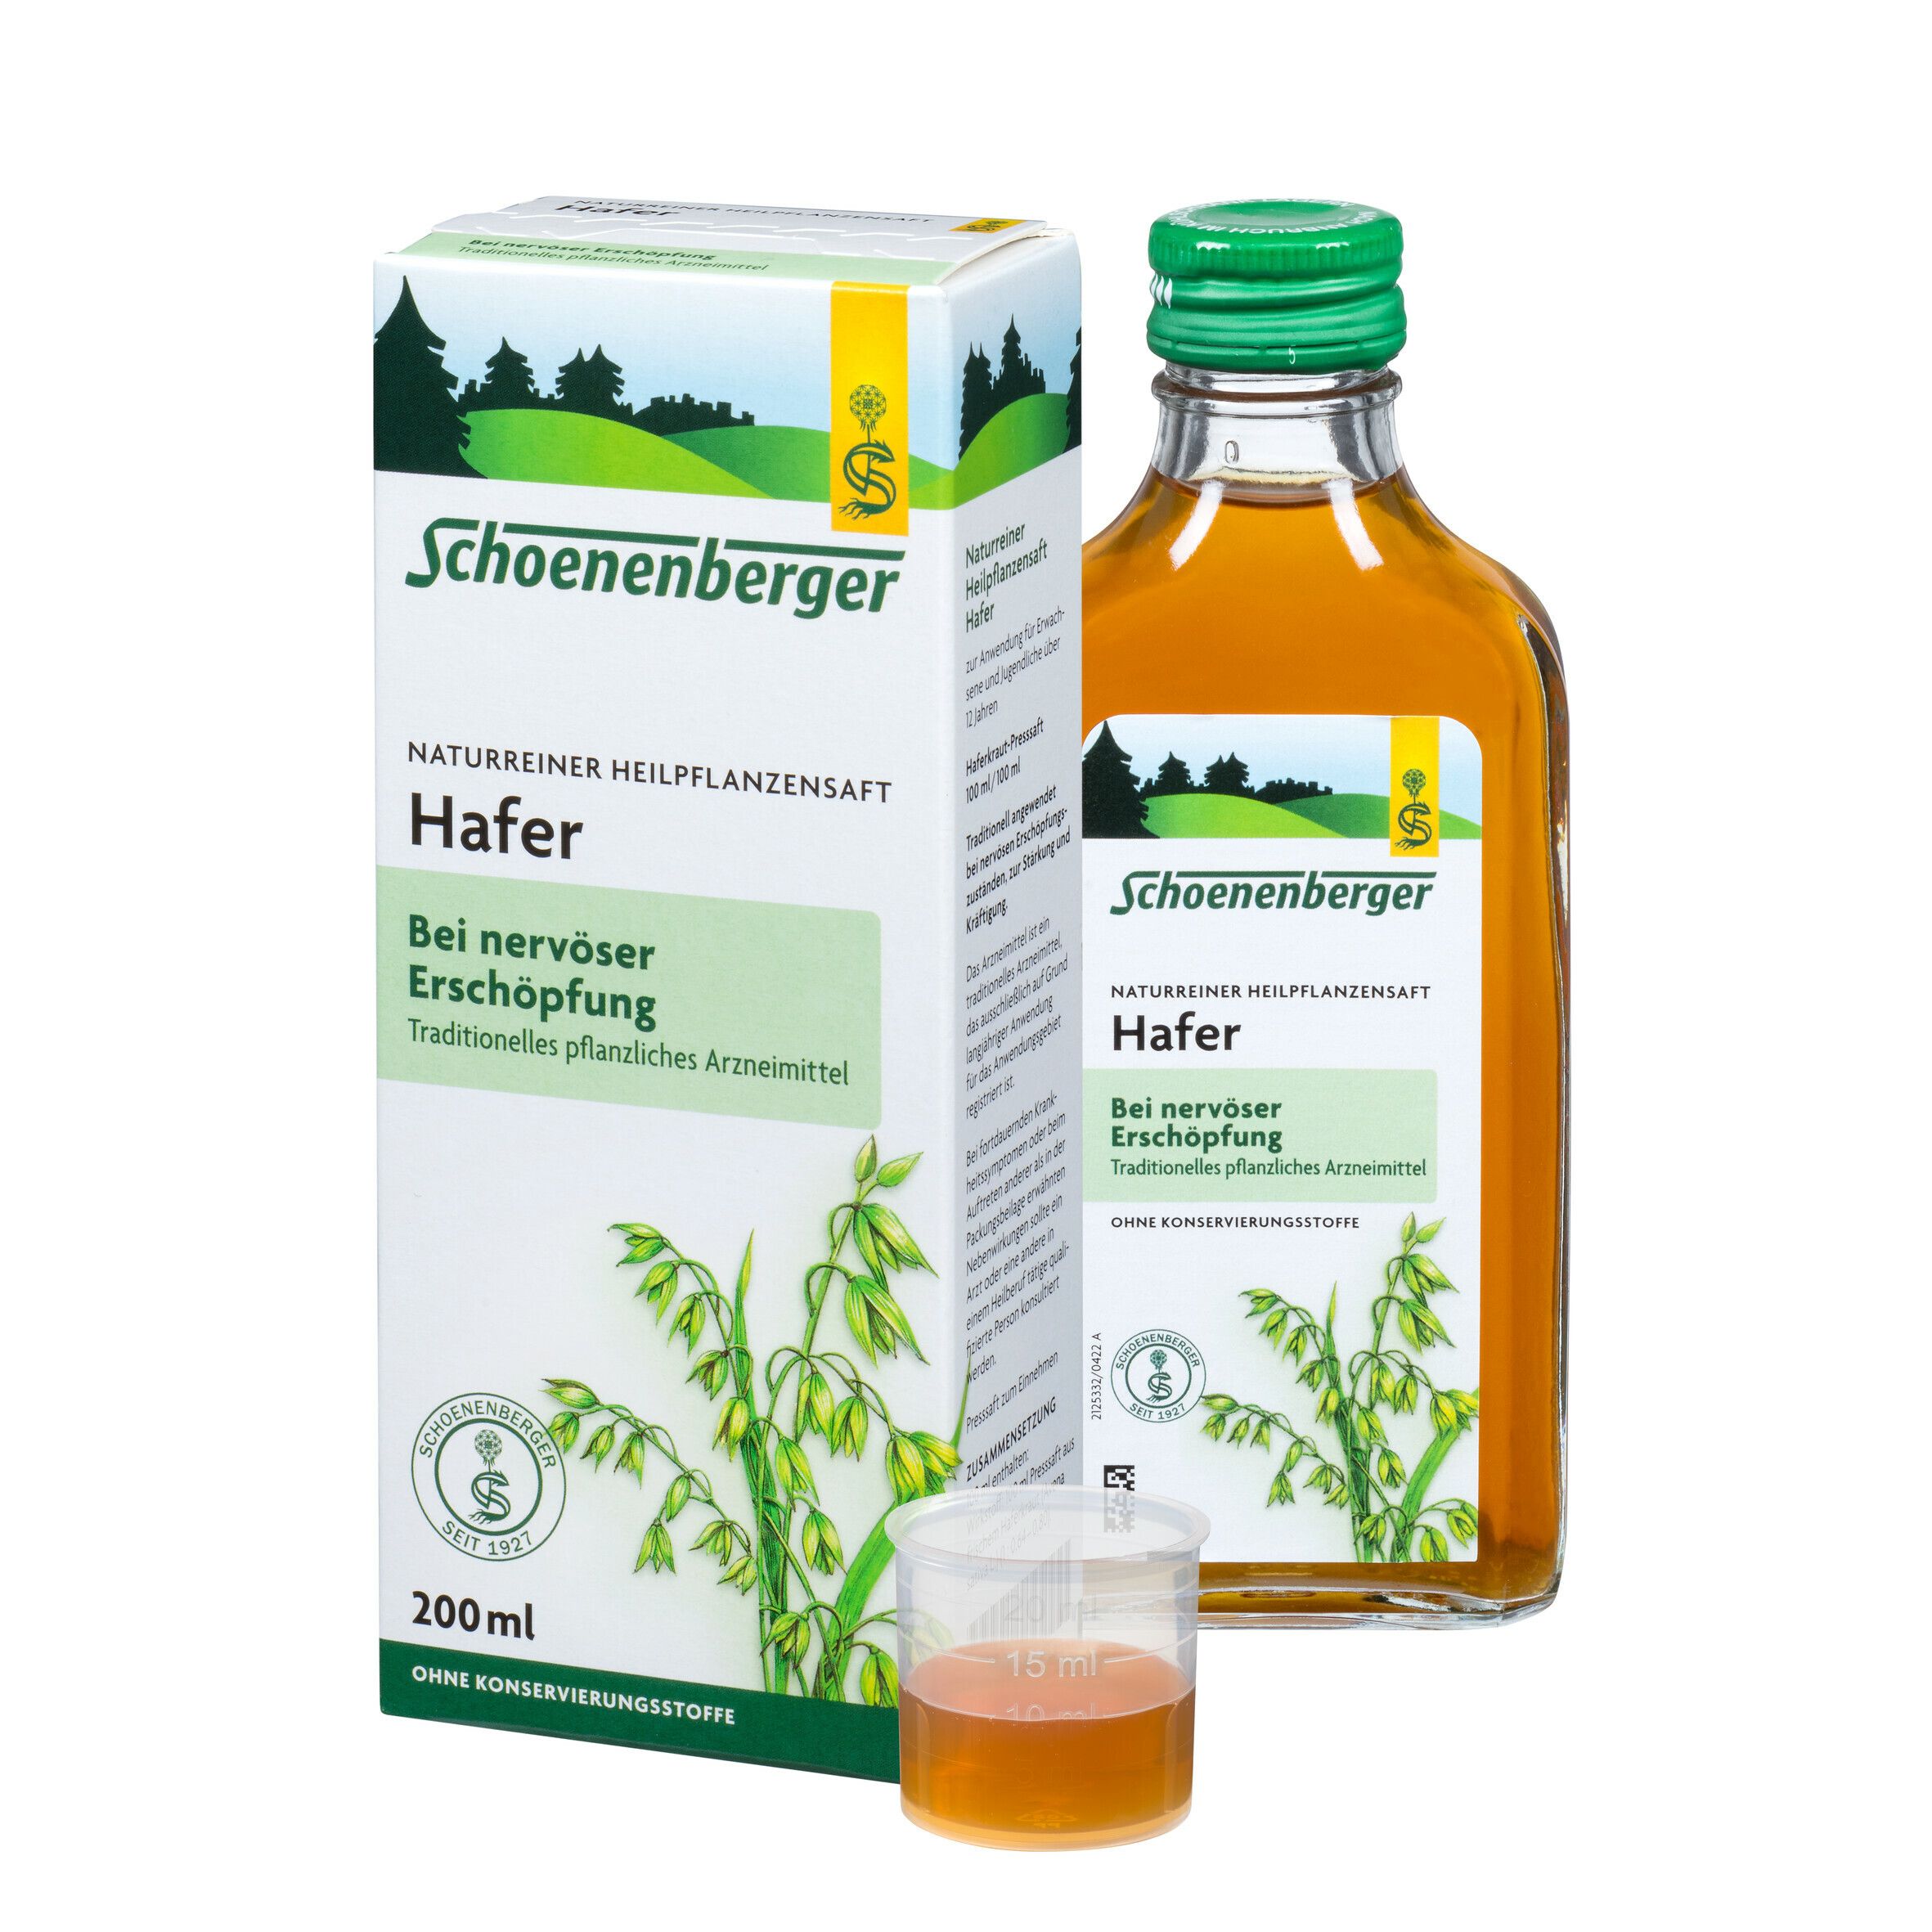 Schoenenberger® Hafer naturreiner Heilpflanzensaft Hafer